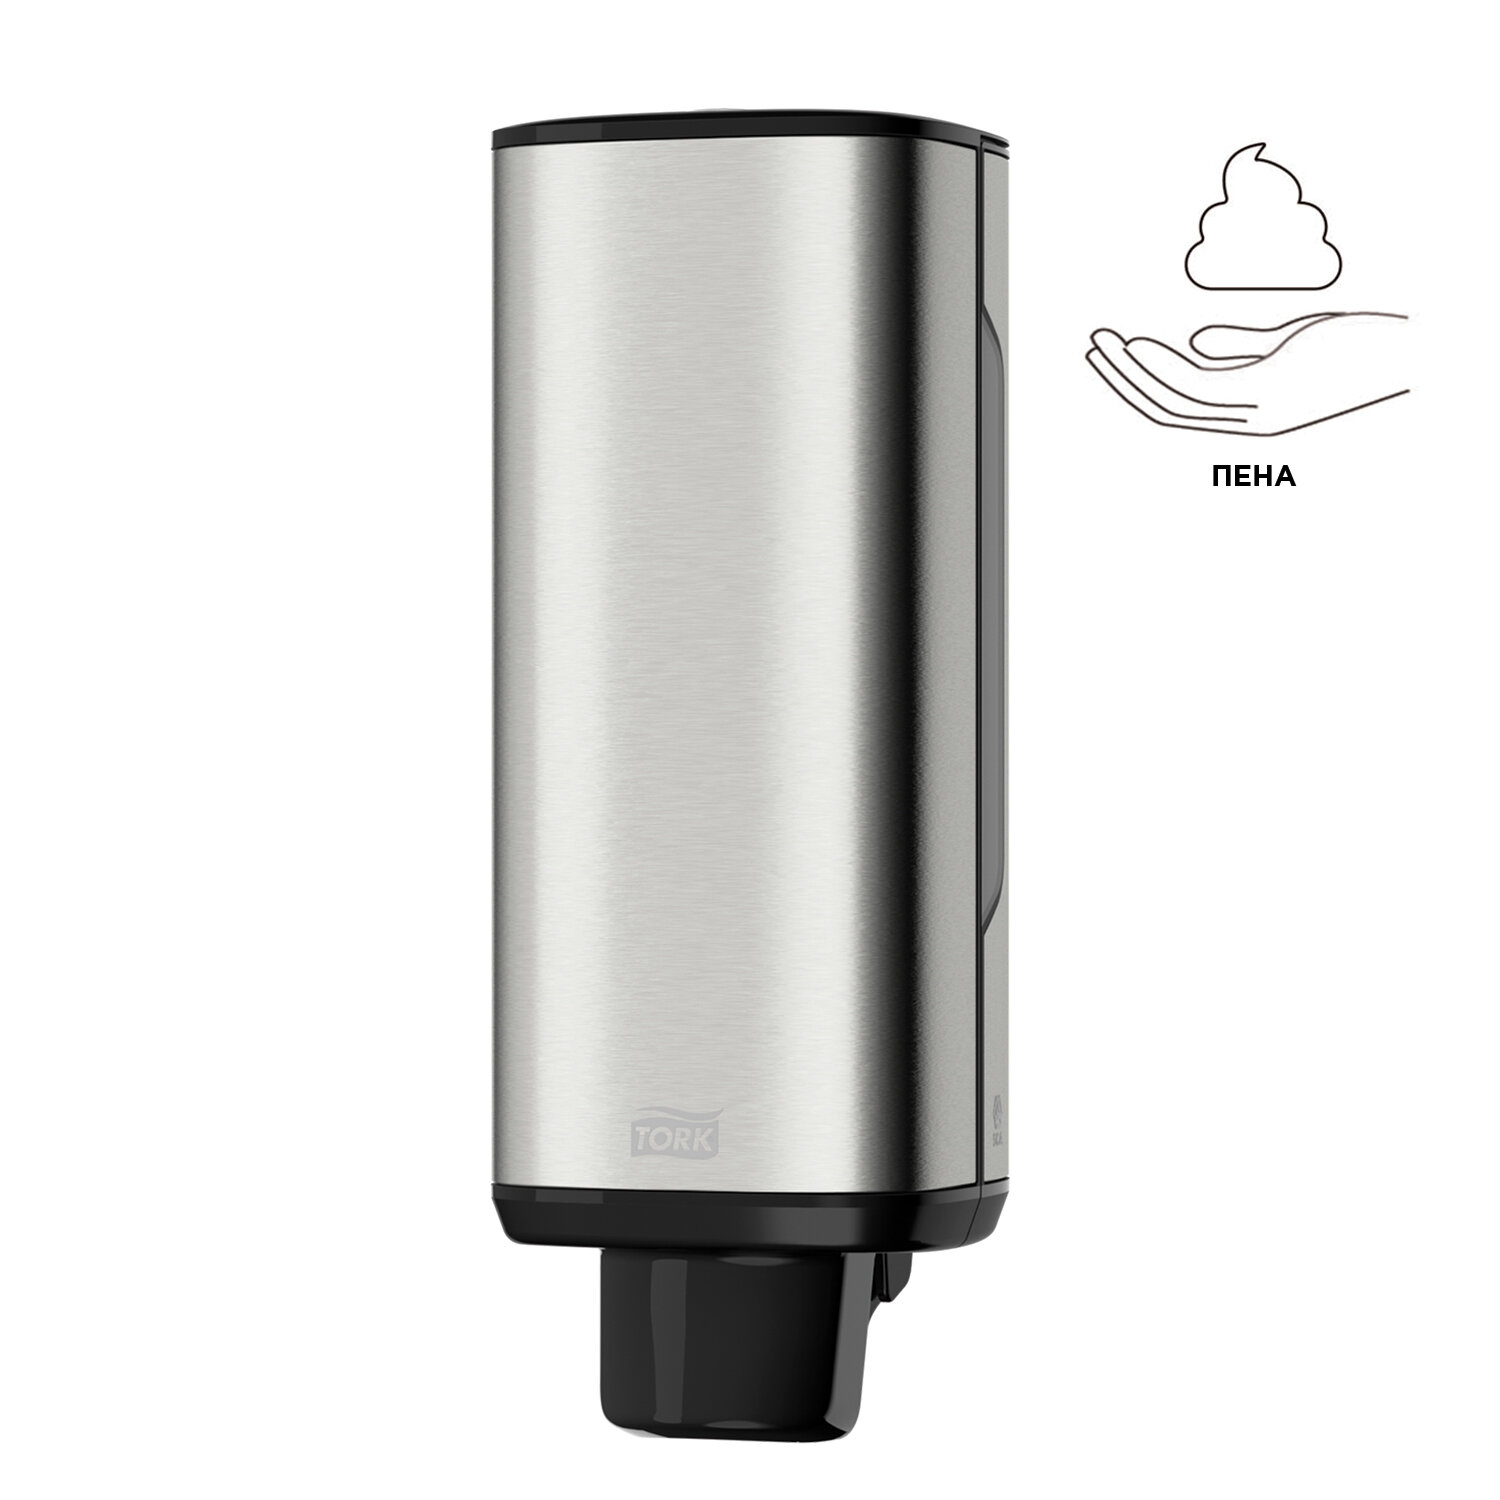 TORK Диспенсер для жидкого мыла-пены TORK (Система S4) Image Design, 1 л, металлический, 460010